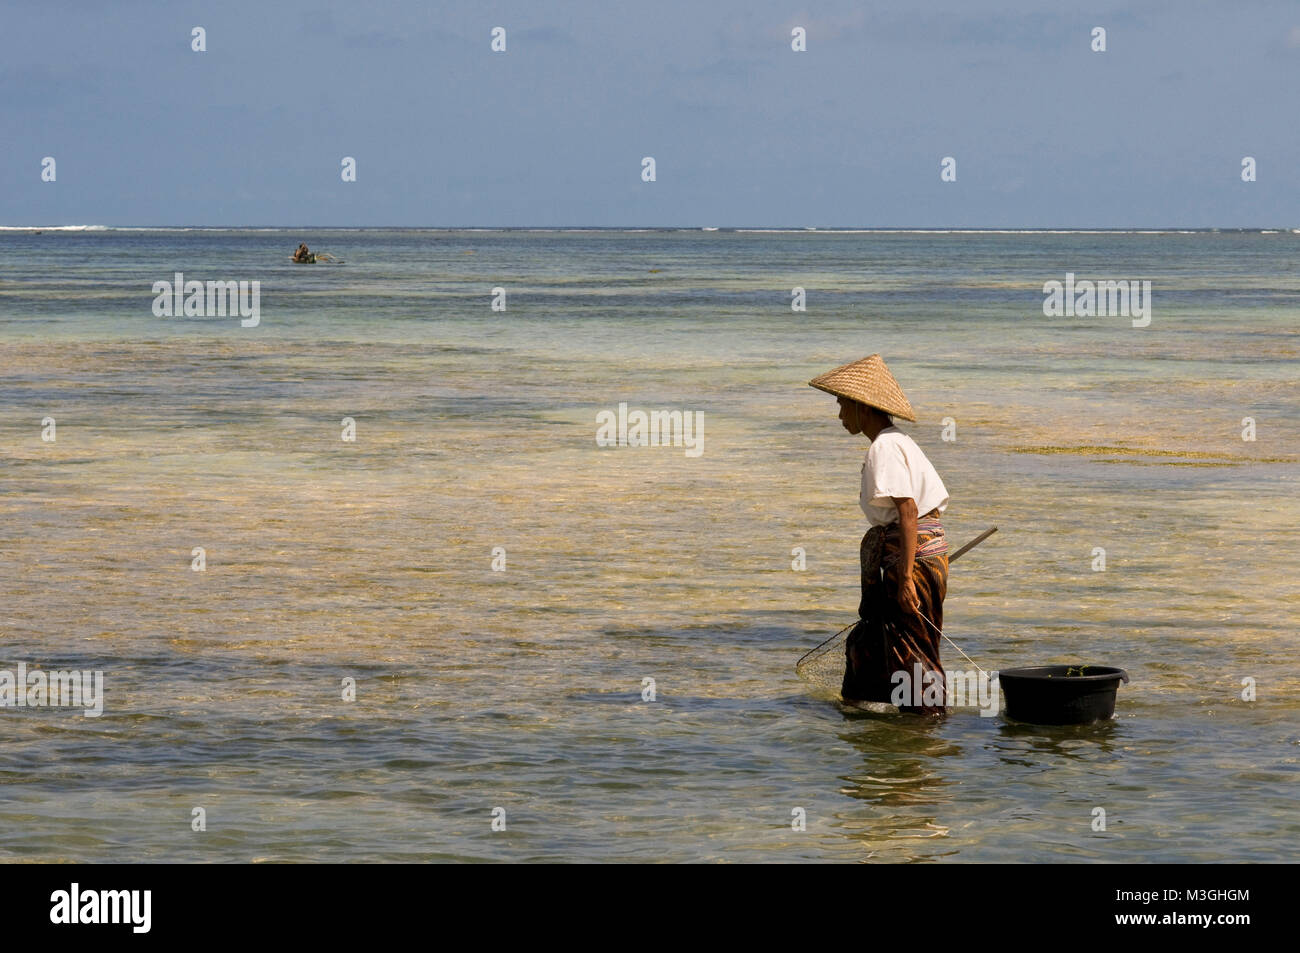 Les femmes doivent souvent marcher le long du rivage de la plage de Kuta, un pêcheur au sud de Lombok, à l'algue, qui est très apprécié pour la cuisson. Kuta Lombok, Indonésie Banque D'Images